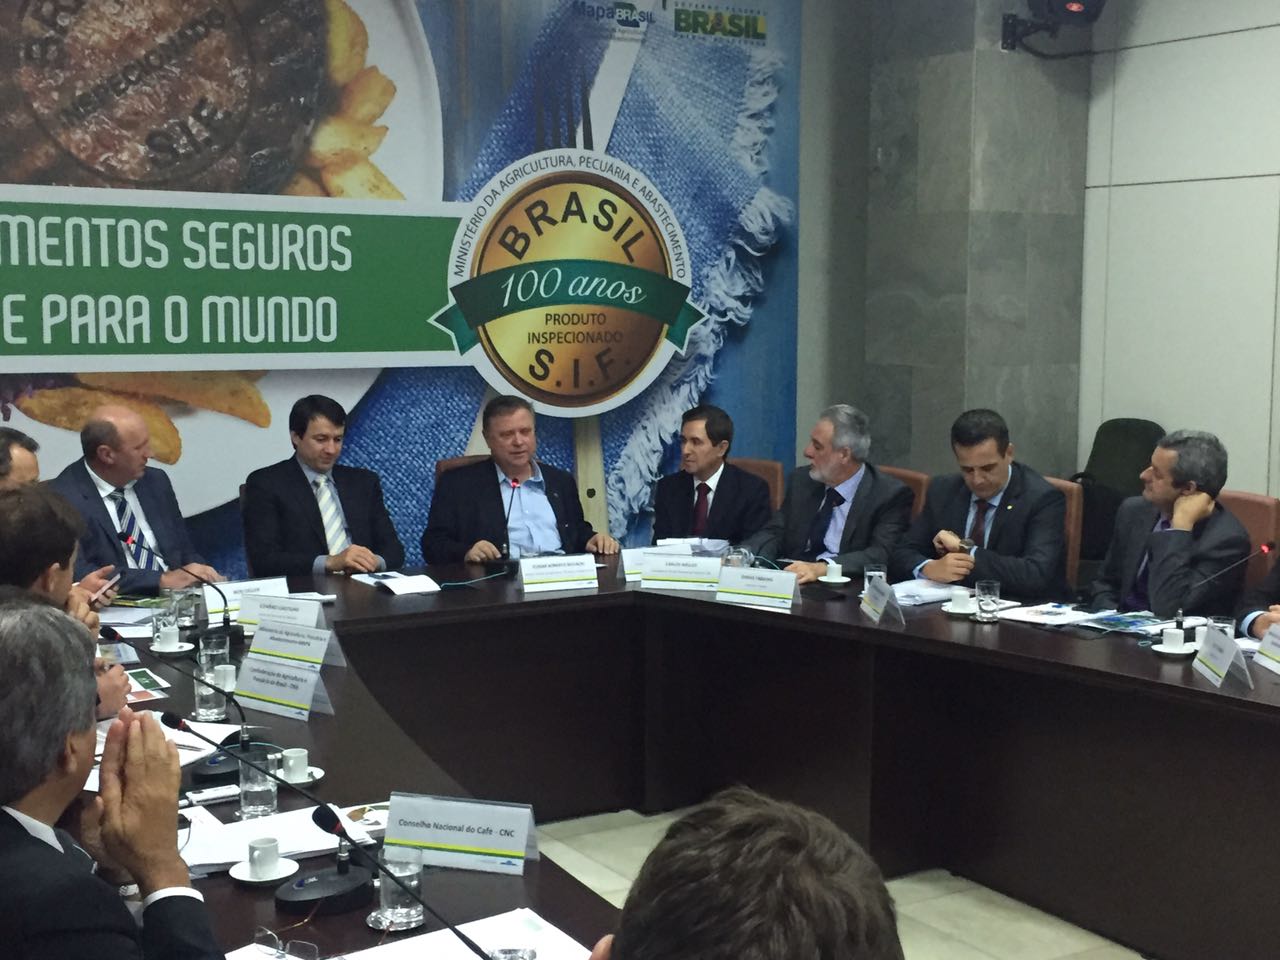 Setor cafeeiro participa de reunião com ministro da agricultura Blairo Maggi nesta 5ª feira